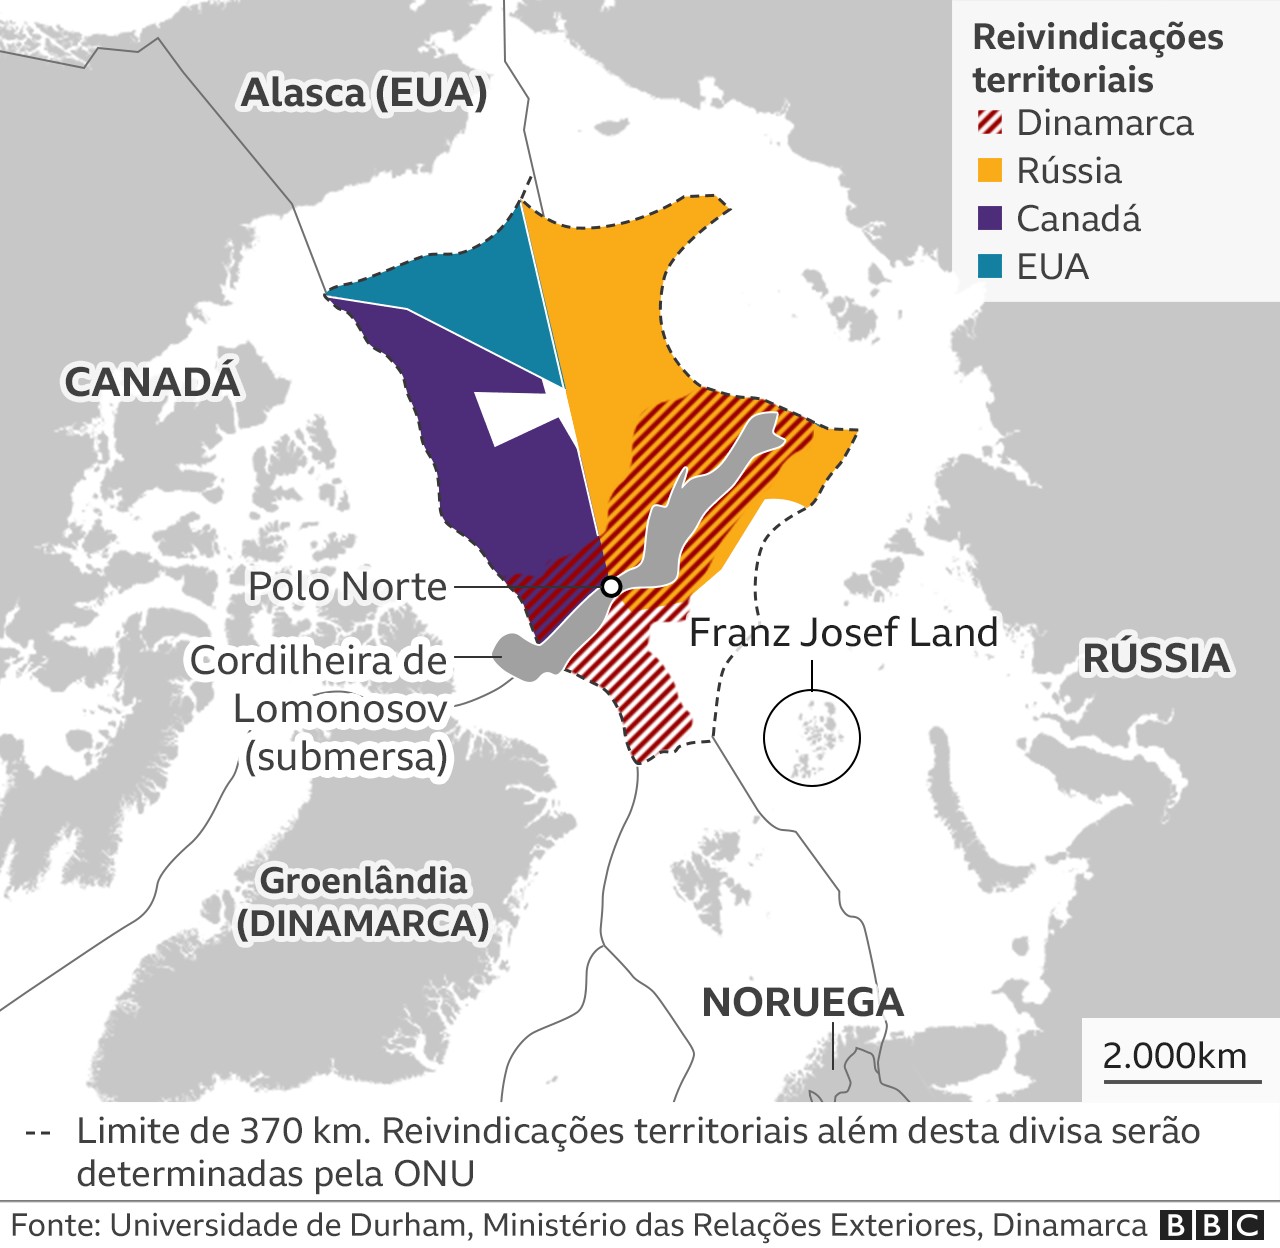 Reivindicações territoriais no Ártico (Foto: BBC)